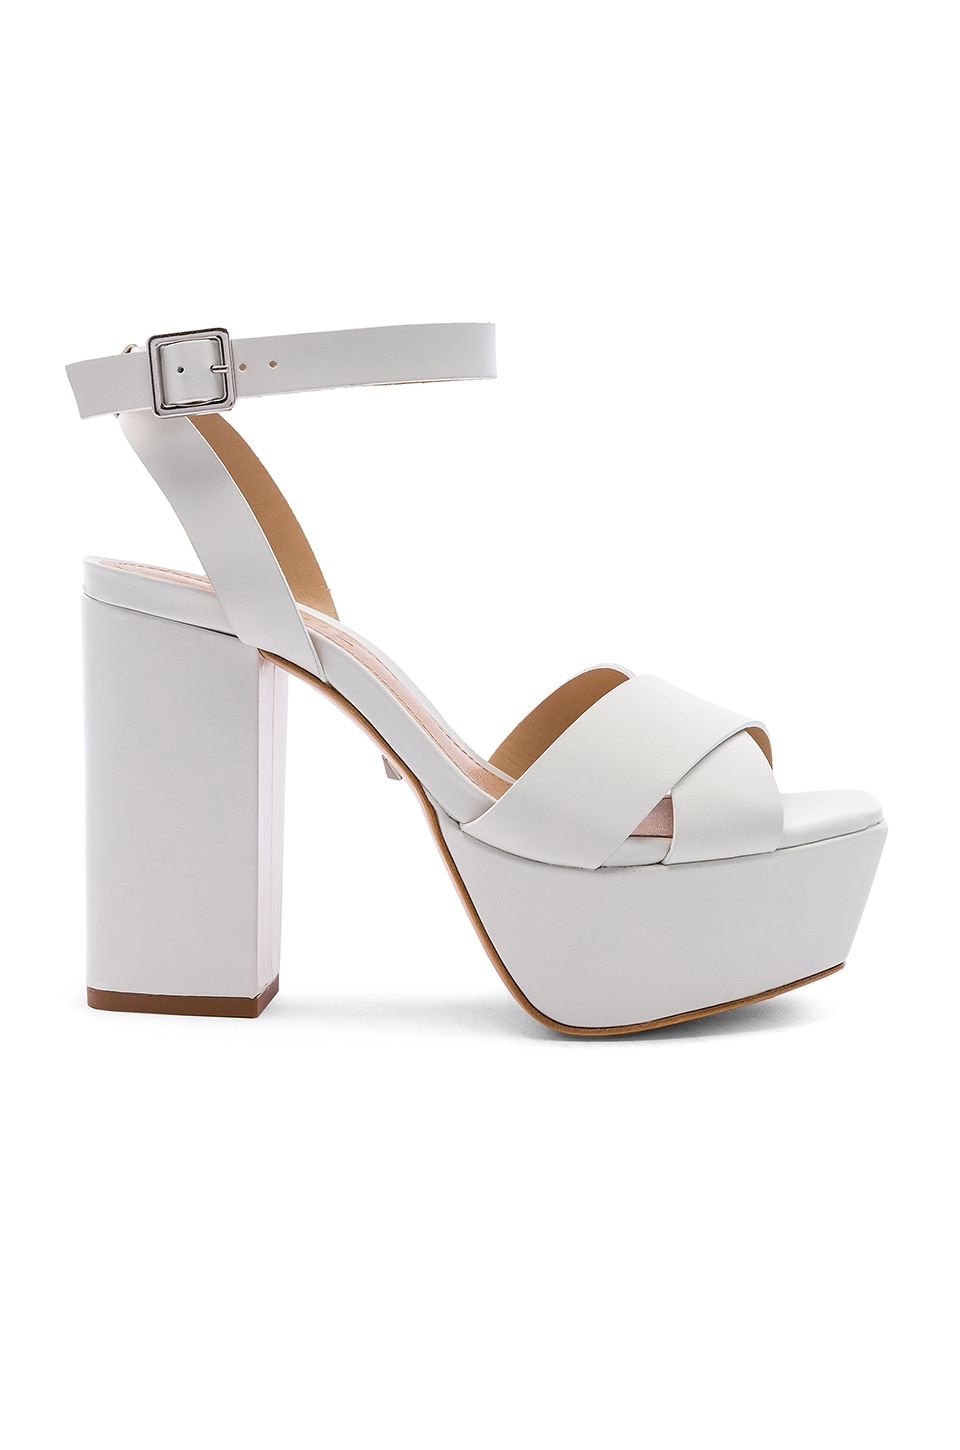 schutz white heels